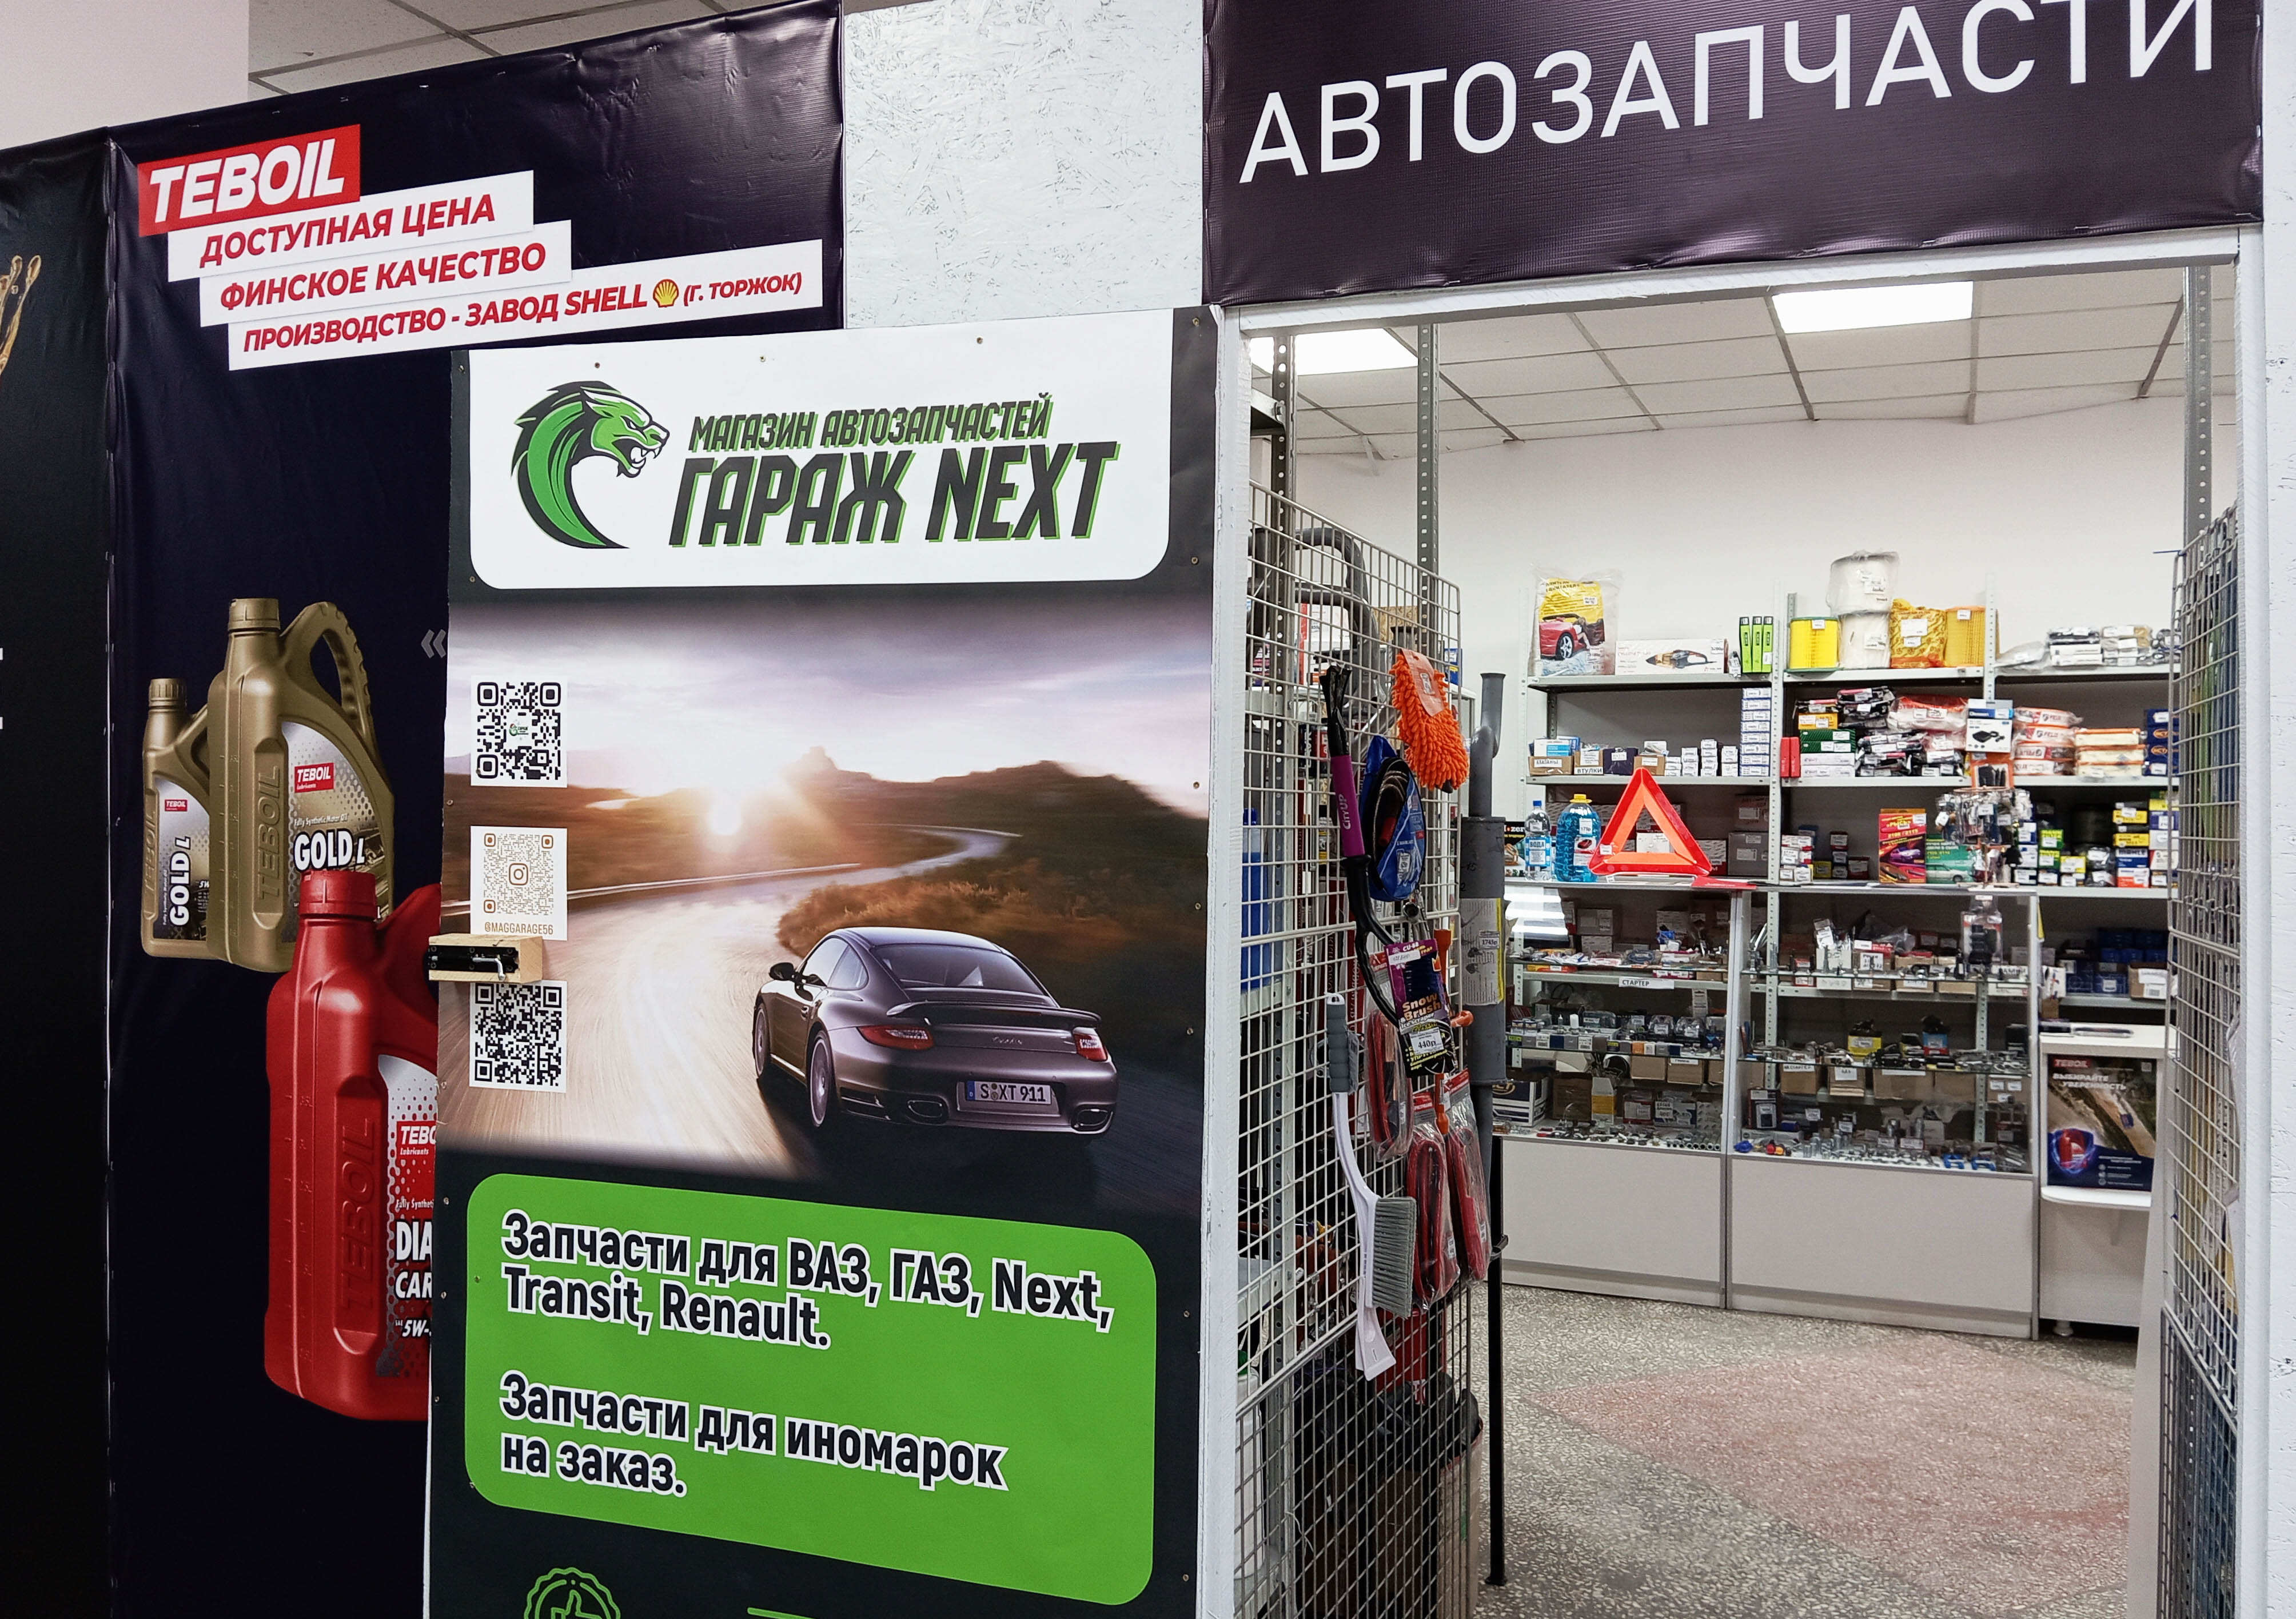 Новый магазин автозапчастей "Гараж Next" открылся в Орске